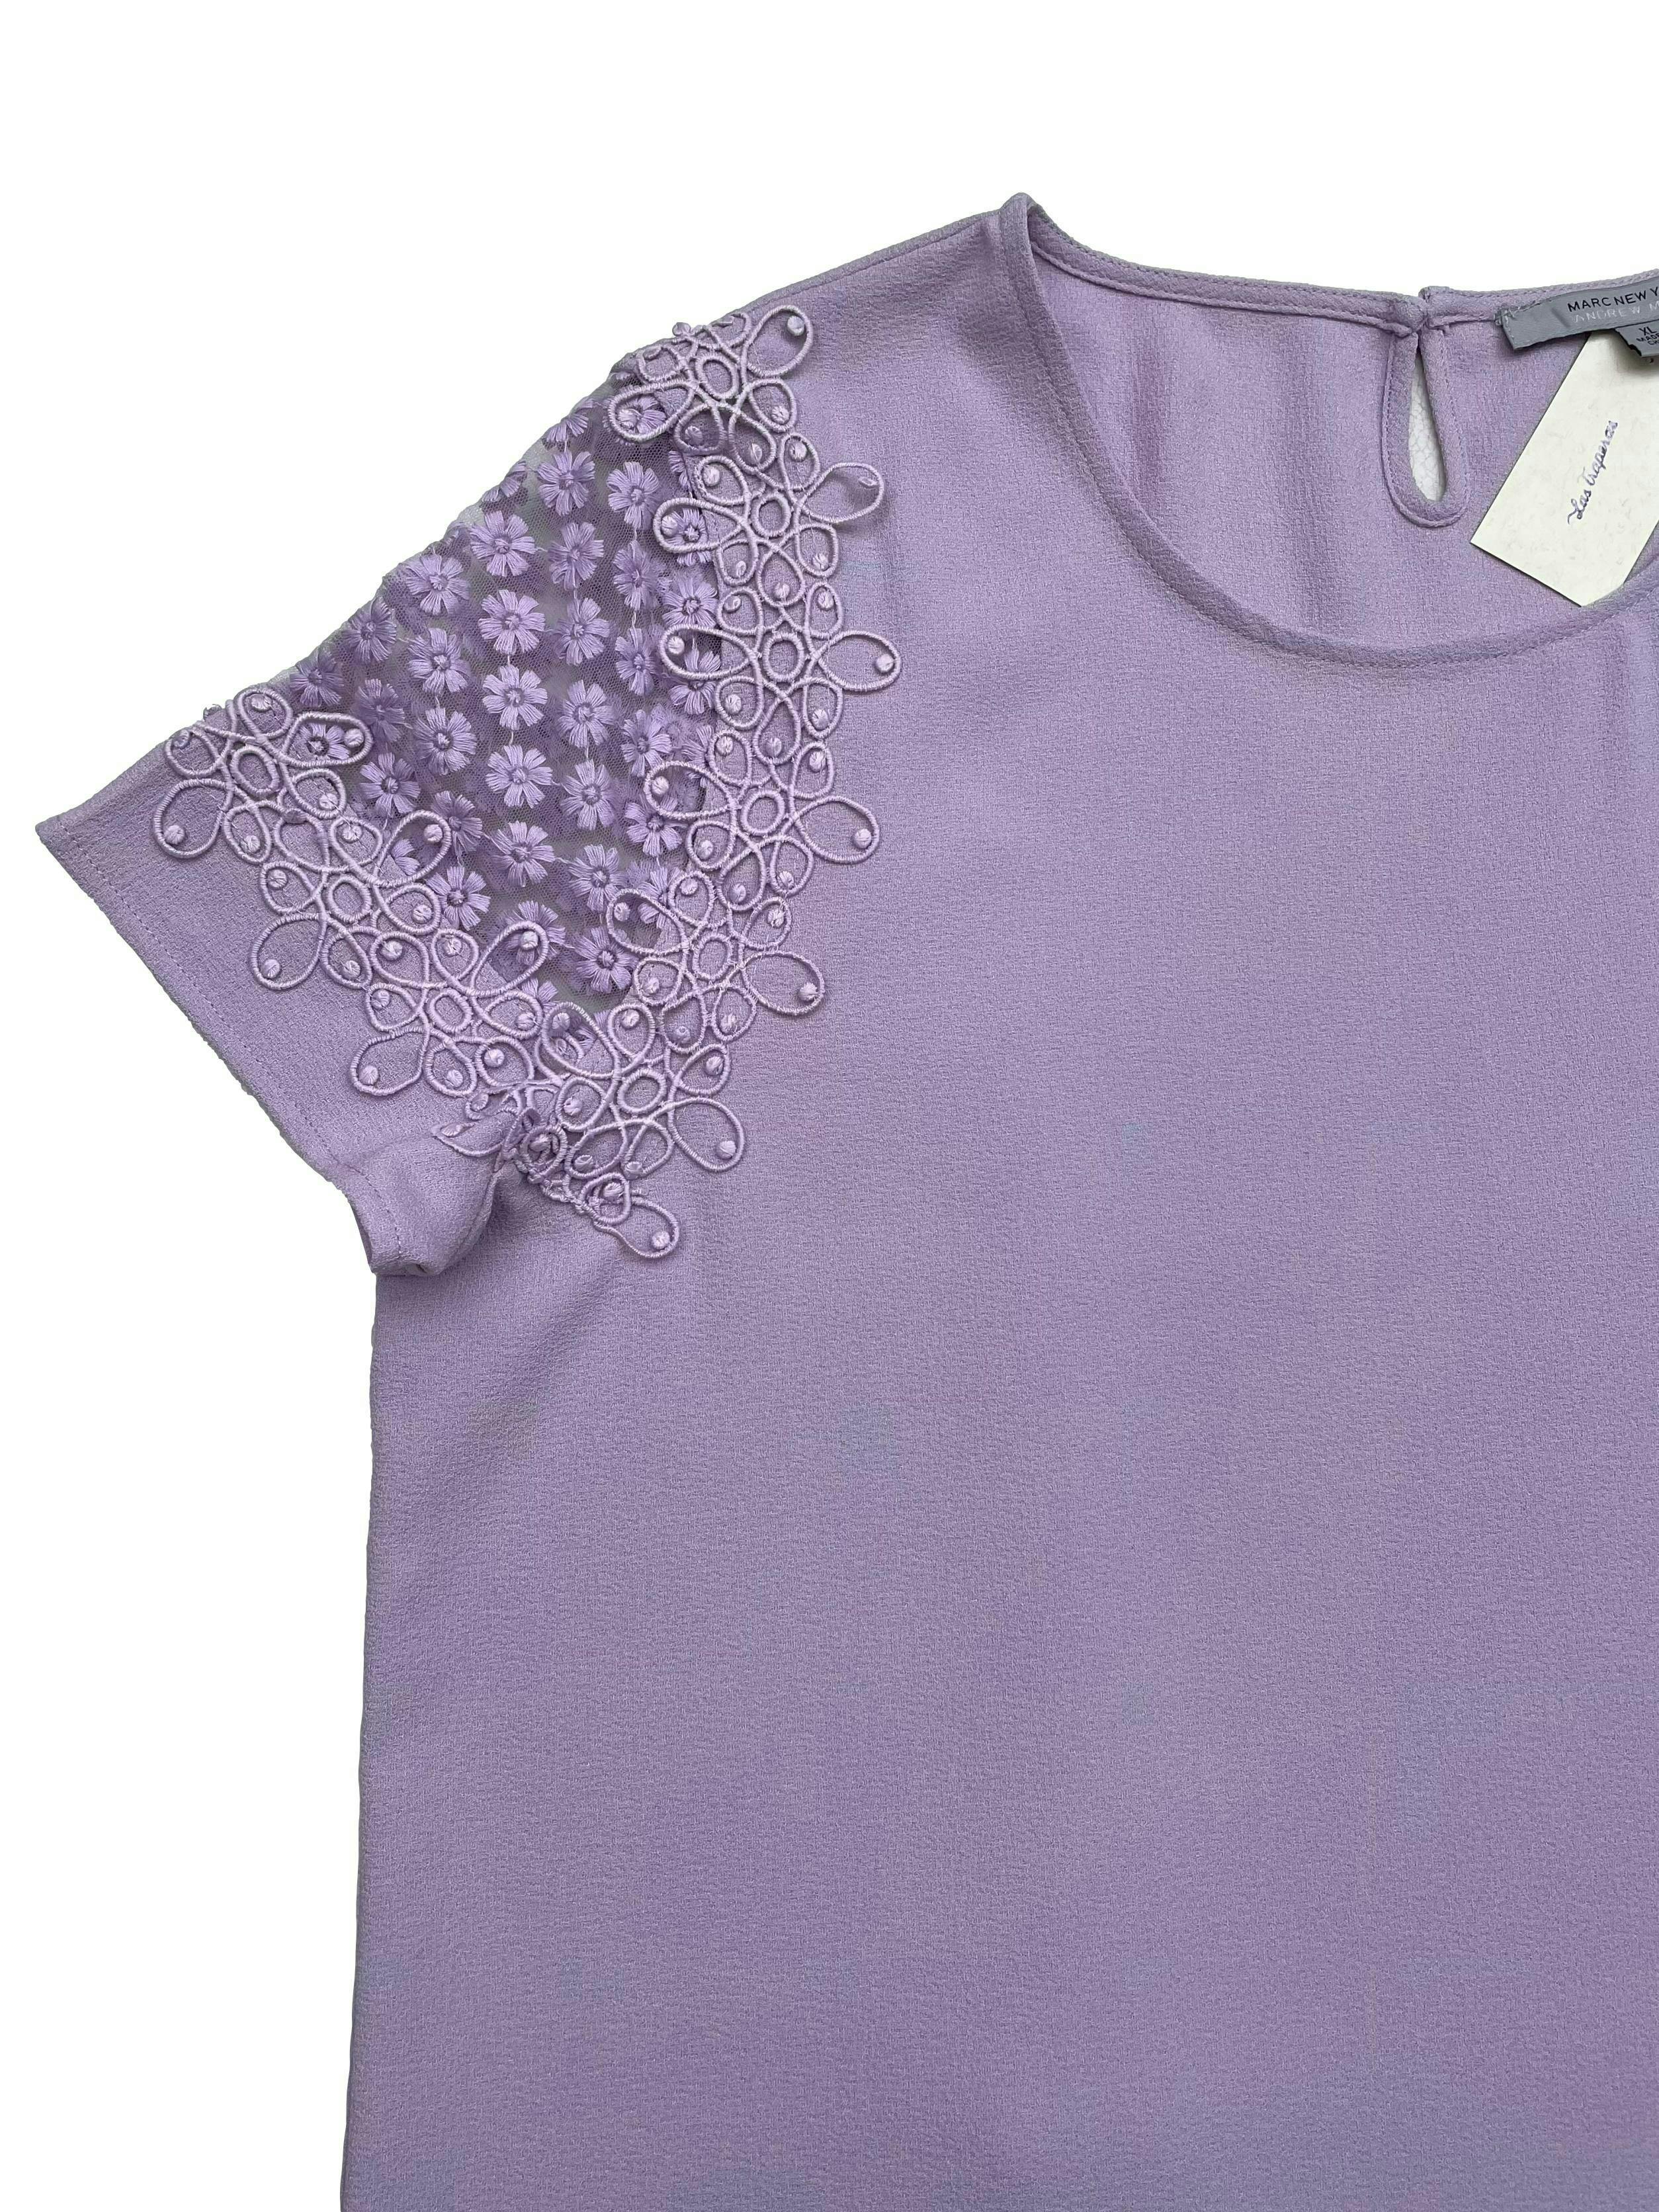 Blusa Marc New York de crepé lila con mngas de tul bordado y aplicaciones. Busto 120cm Largo 65cm